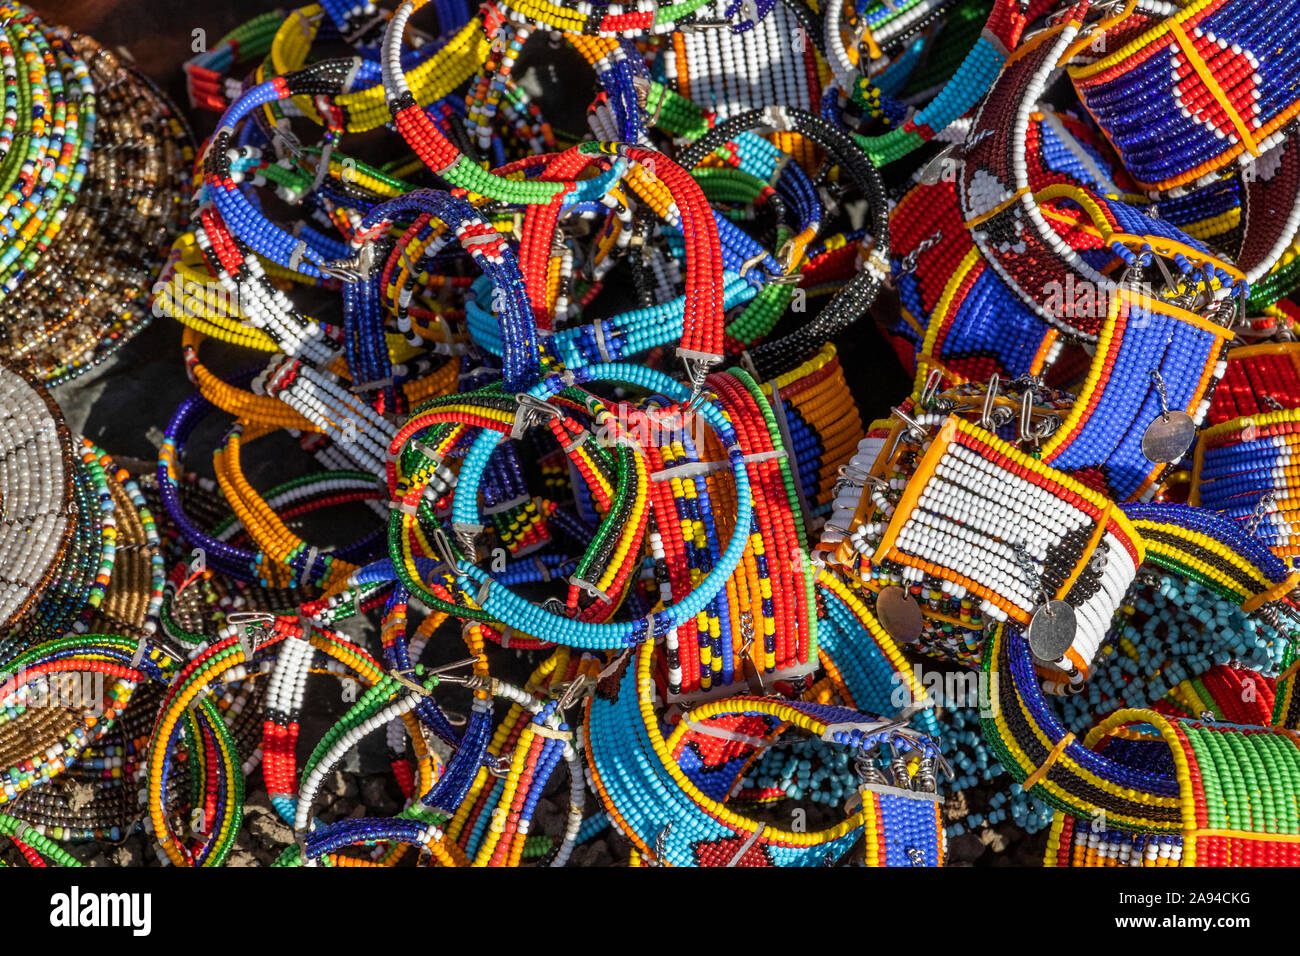 Beaded jewelry in many bright colours; Arusha, Arusha region, Tanzania Stock Photo